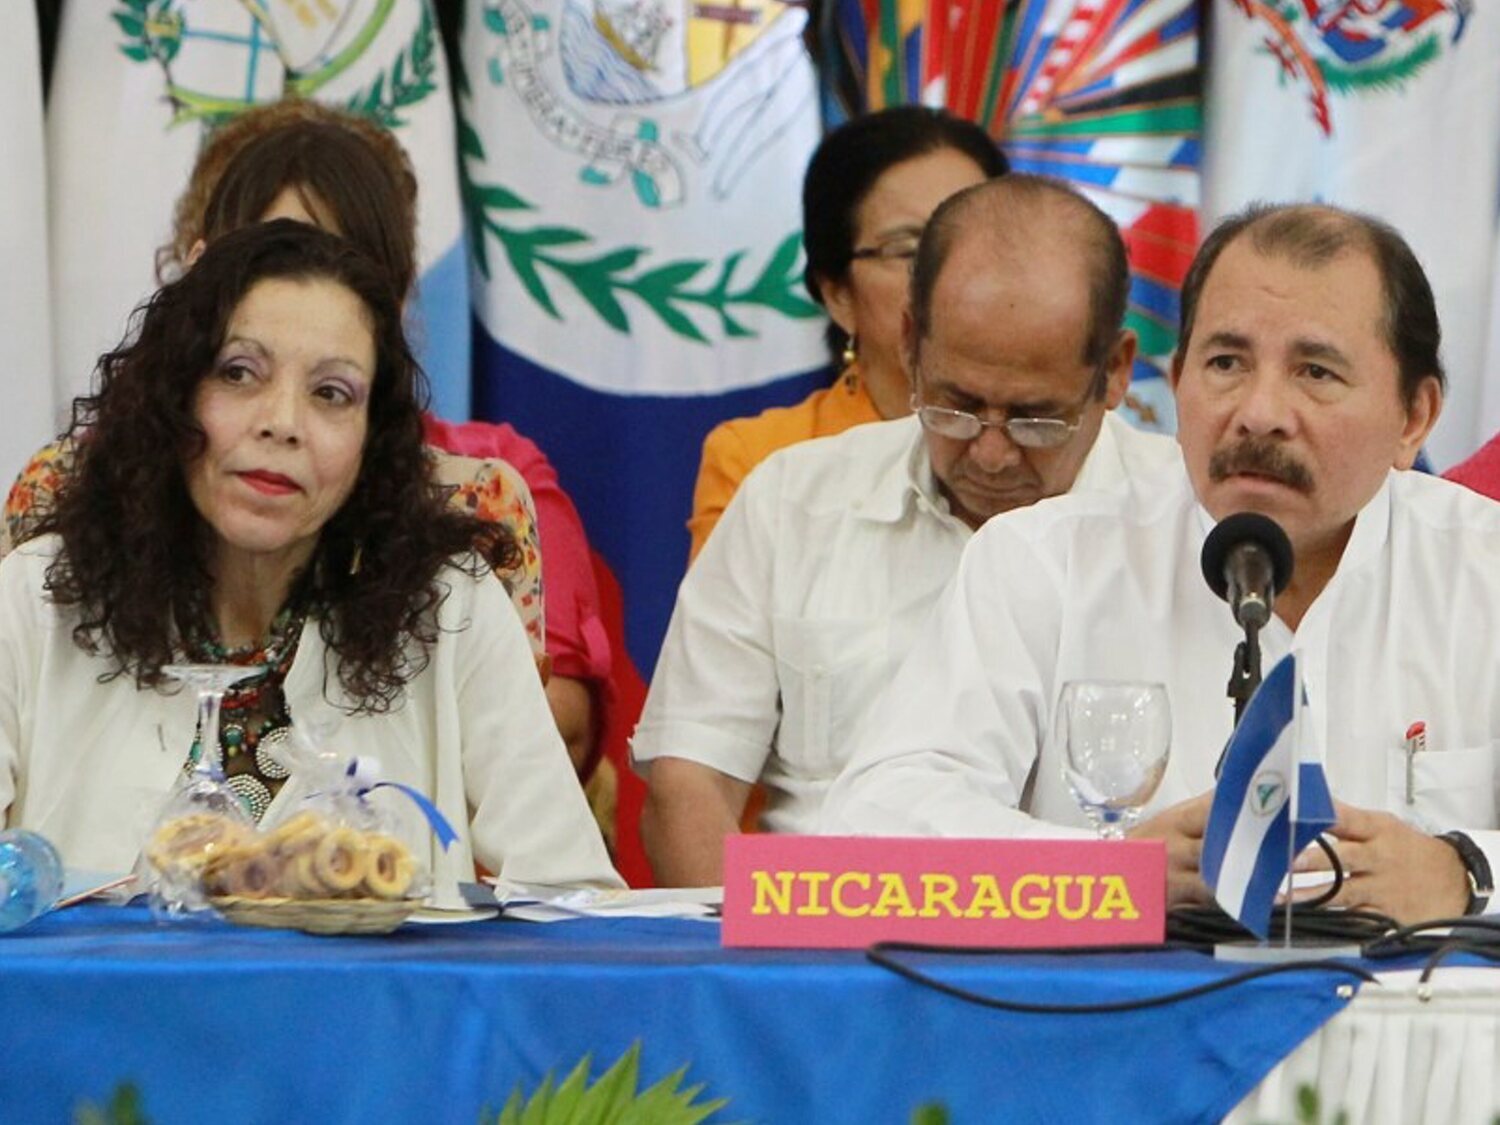 El régimen de Ortega y Murillo camina hacia un sistema de partido único: las claves de la farsa electoral en Nicaragua